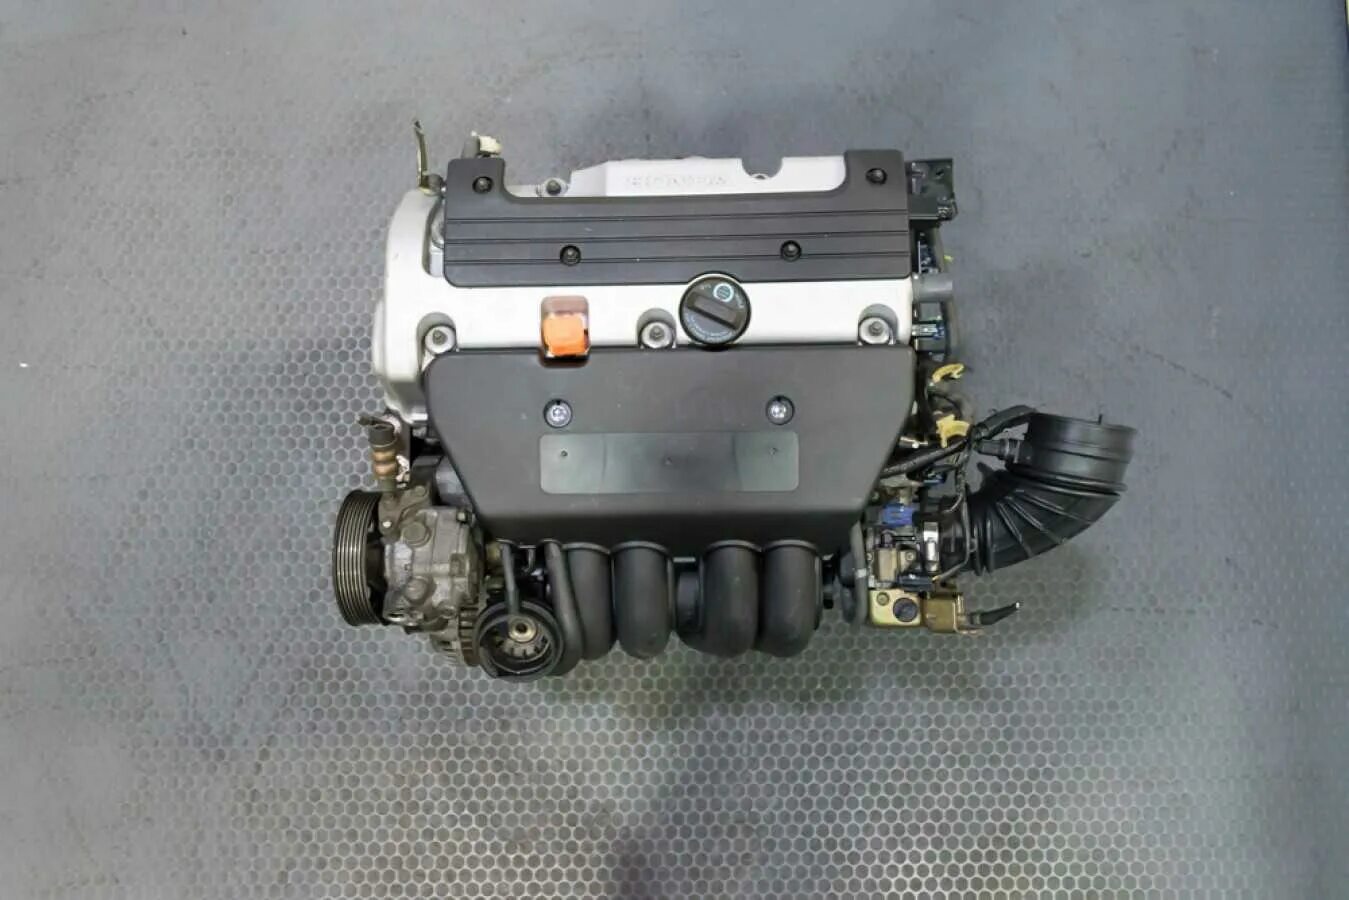 Honda мотор k20a4. K20 двигатель Honda. Honda CR-V мотор k20. Honda CRV мотор k20a4. Двигатель хонда 2.4 купить